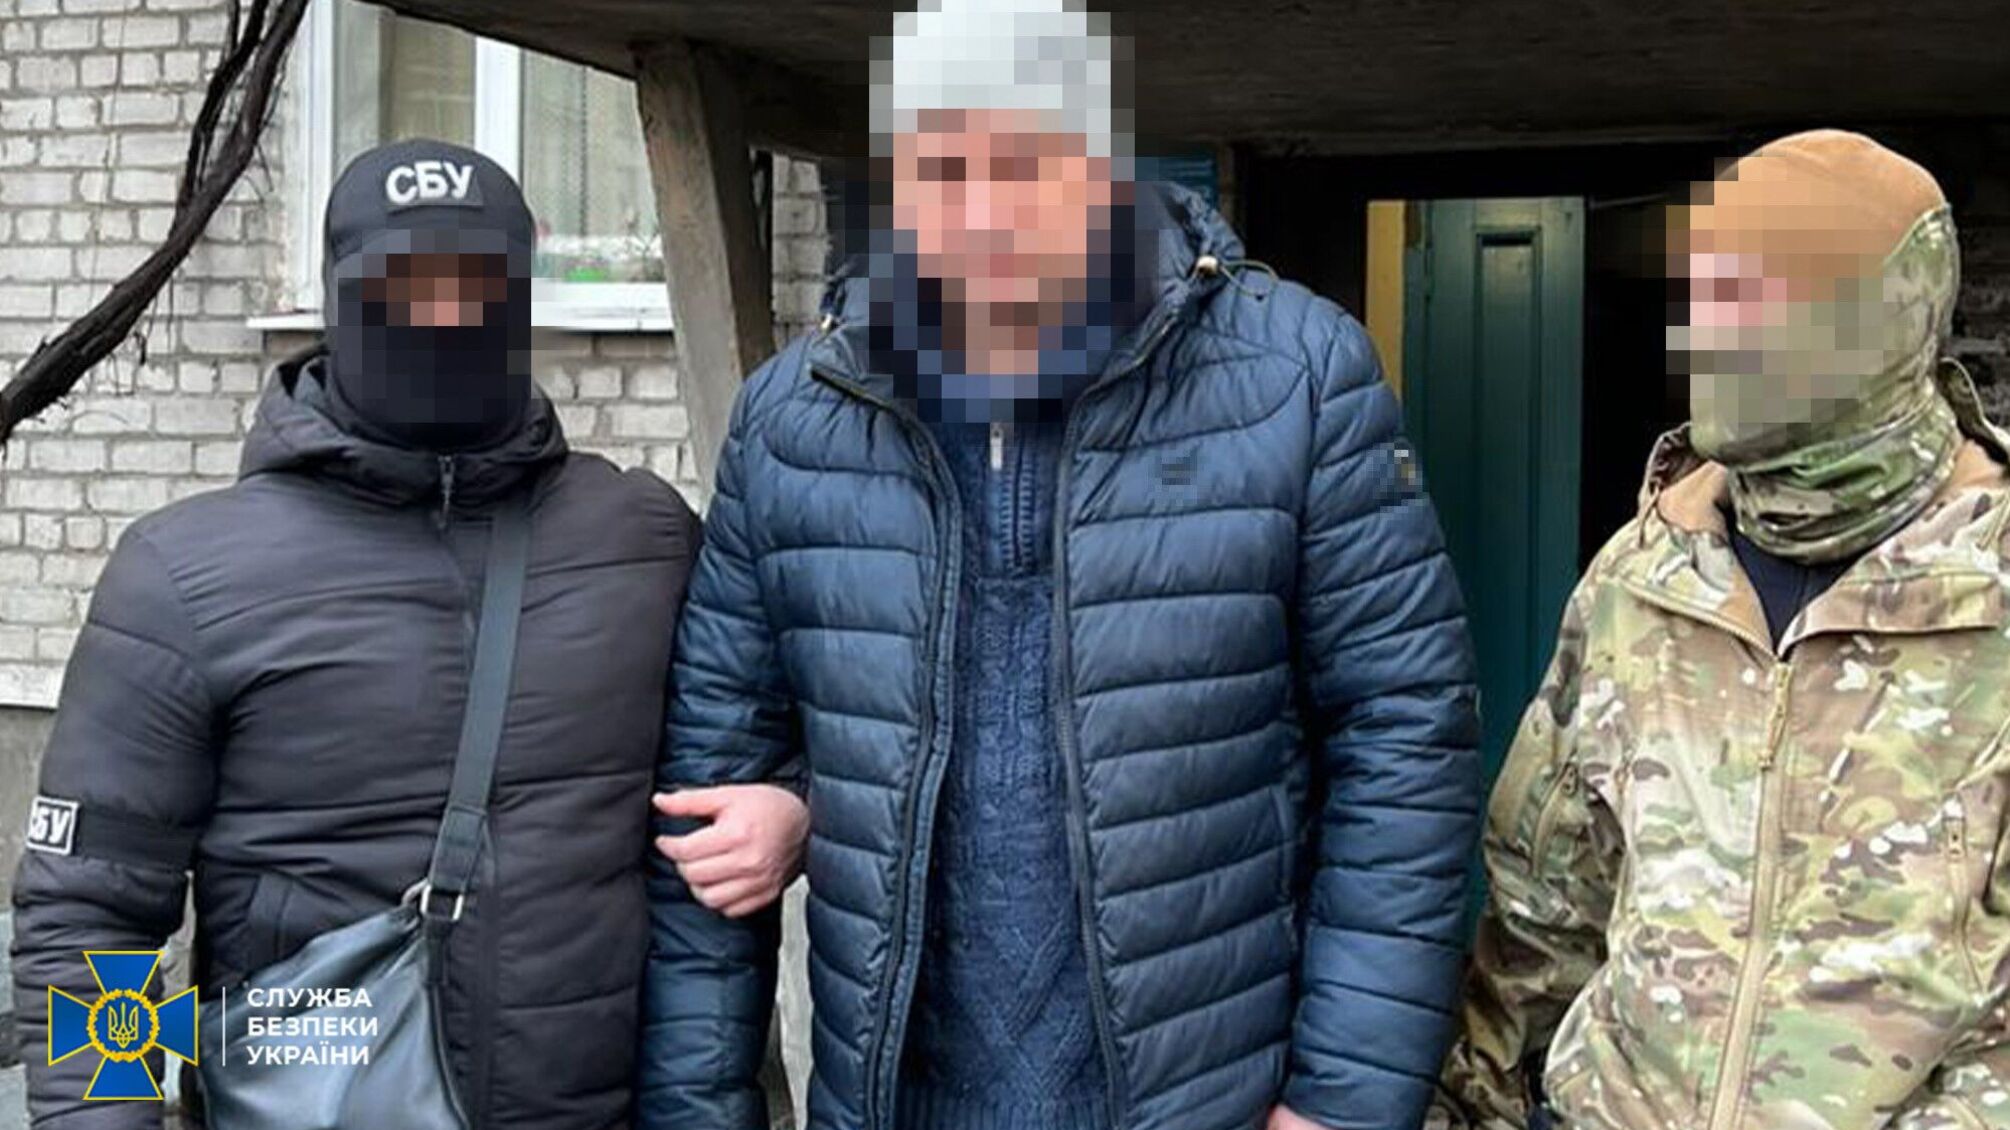 Агент фсб работал в Укрзализныце и собирал разведданные о движении военных эшелонов ВСУ